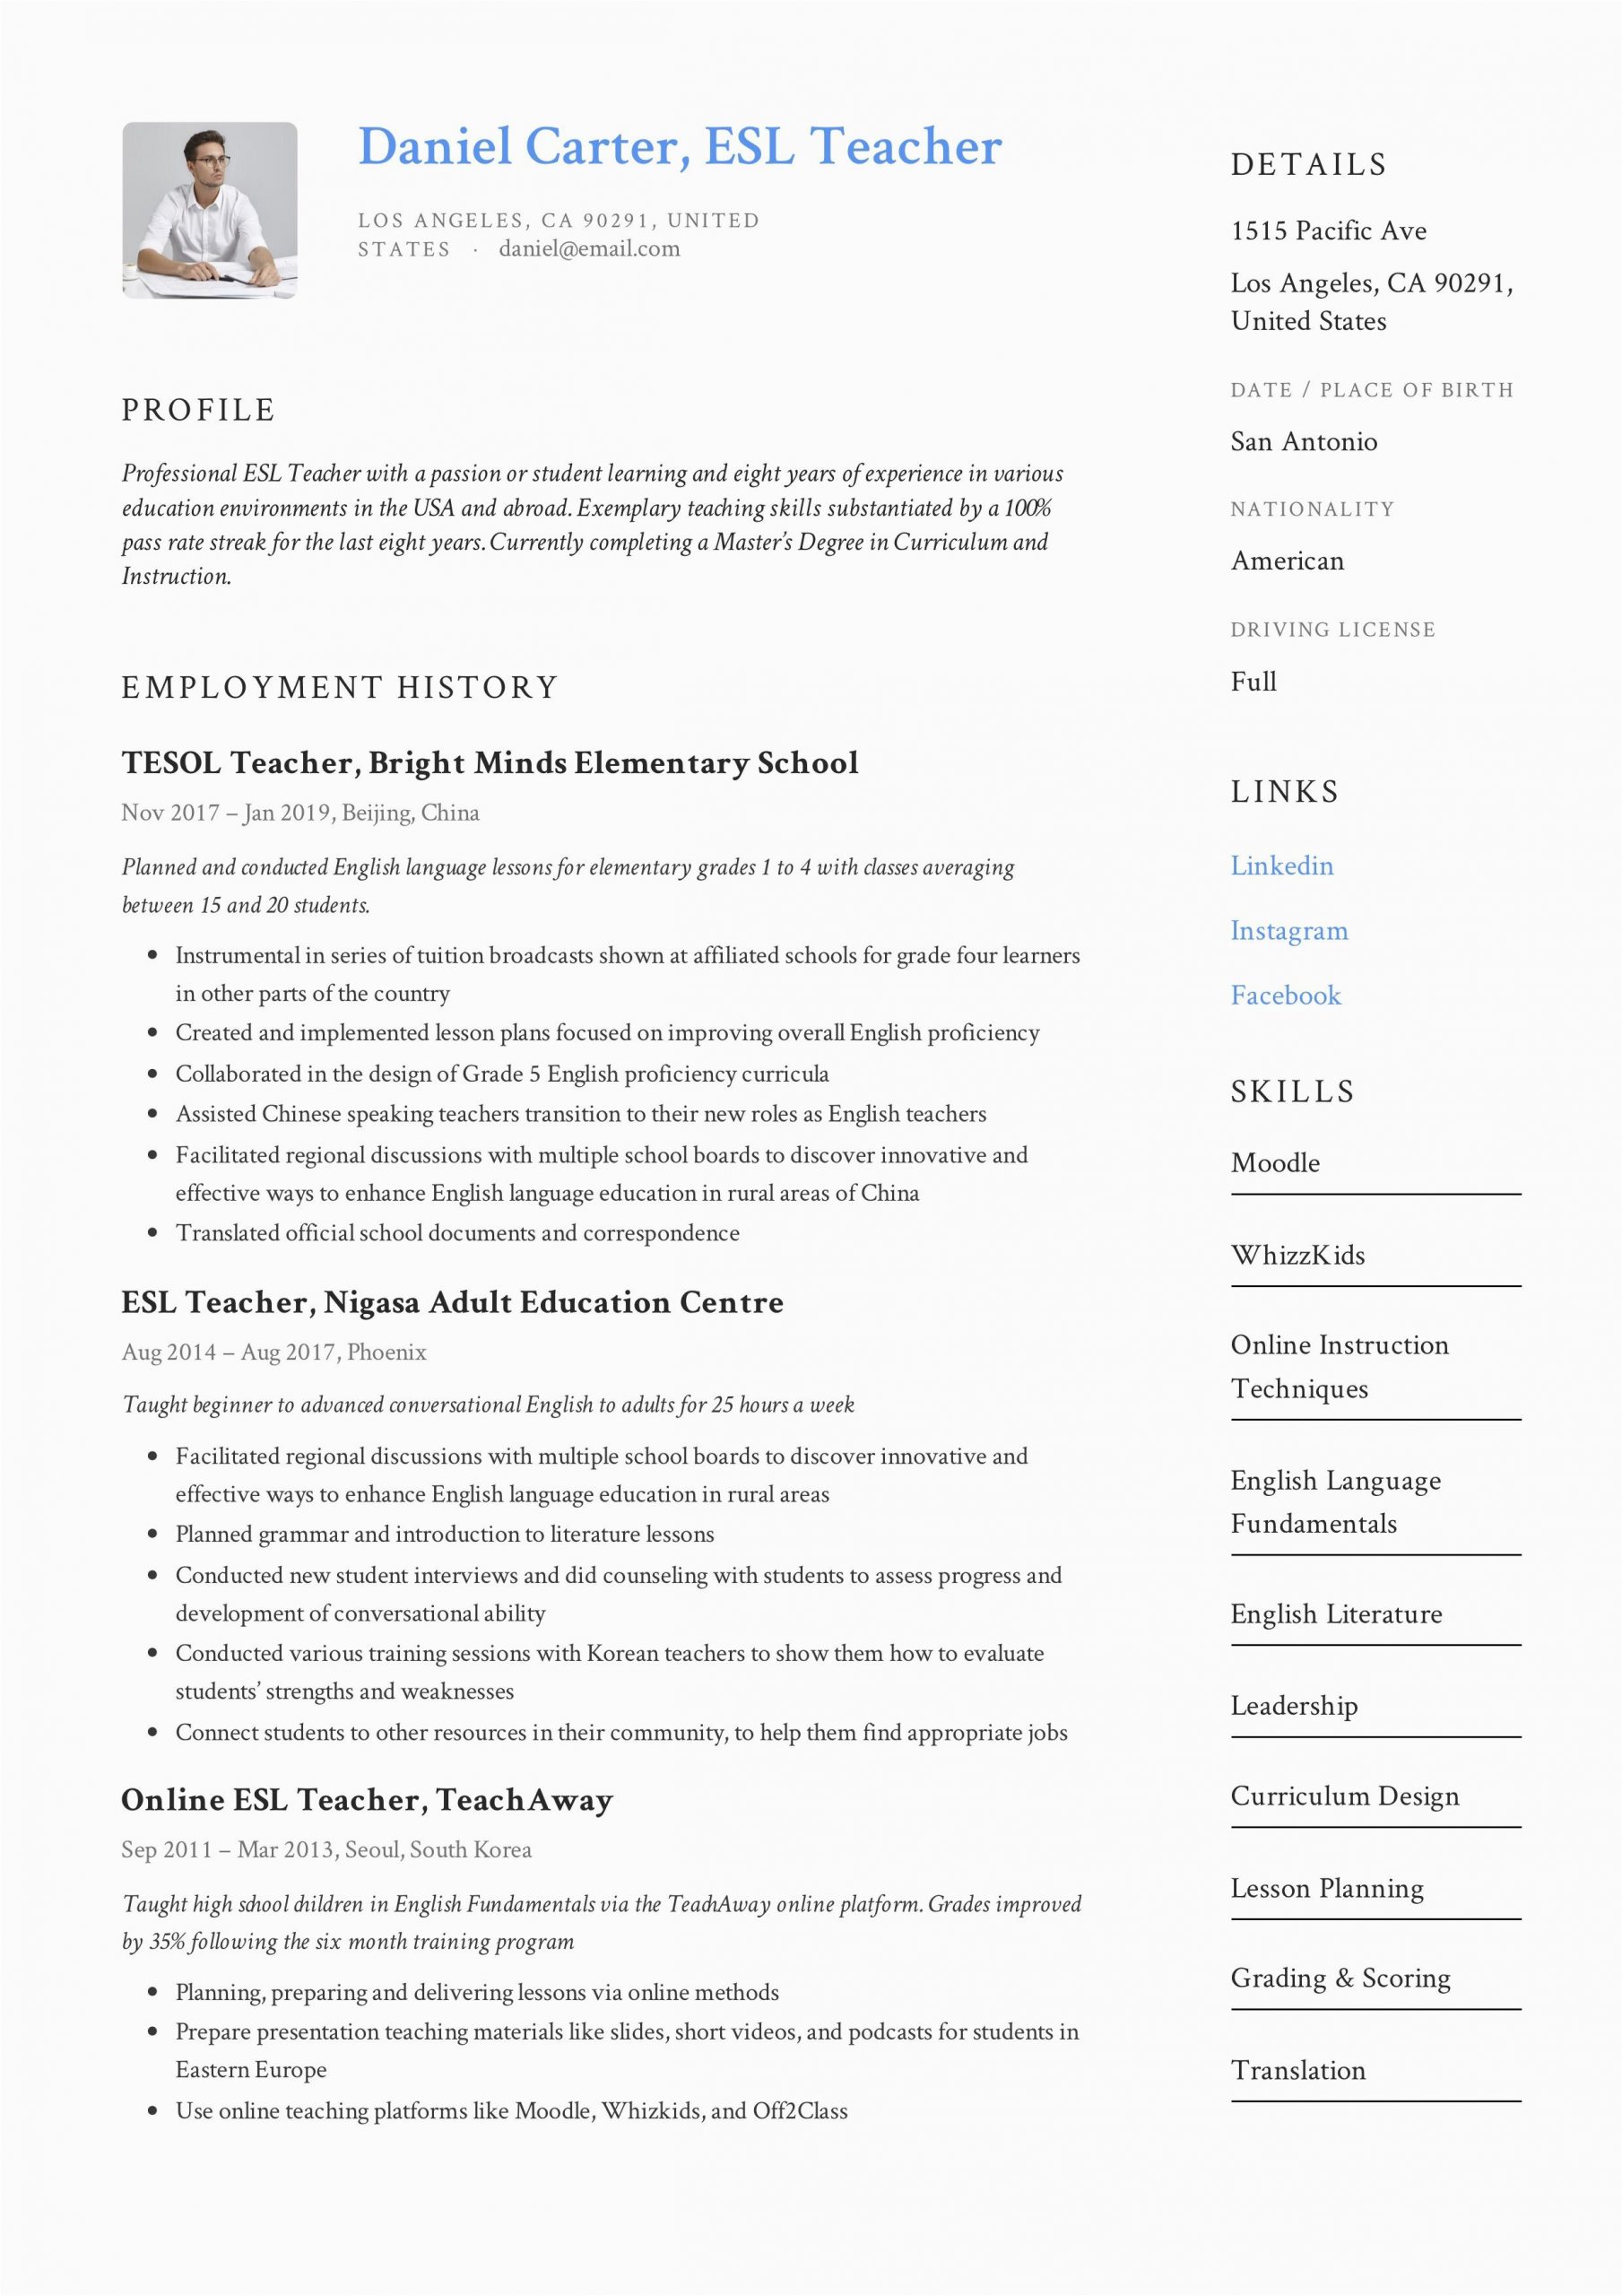 Sample Resume Objective for Esl Teacher Esl Teacher Resume Example In 2020